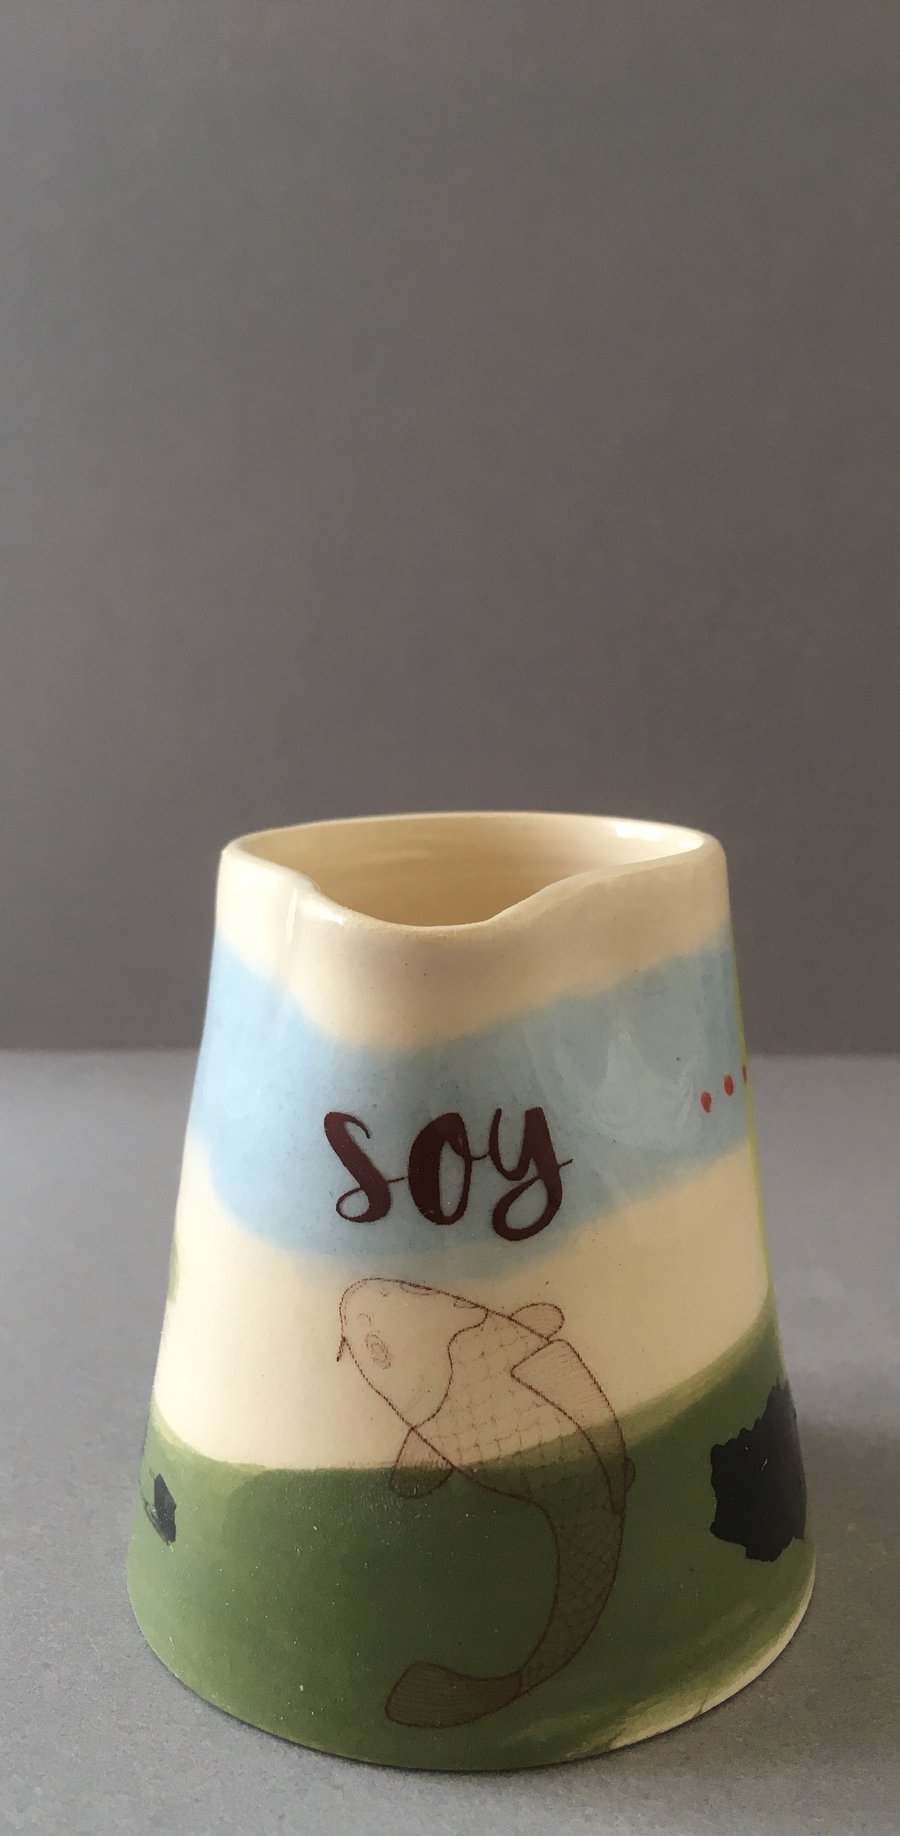 Soy milk. Coy Carp. Pourer. Handmade. Pottery. Colourful ceramics.